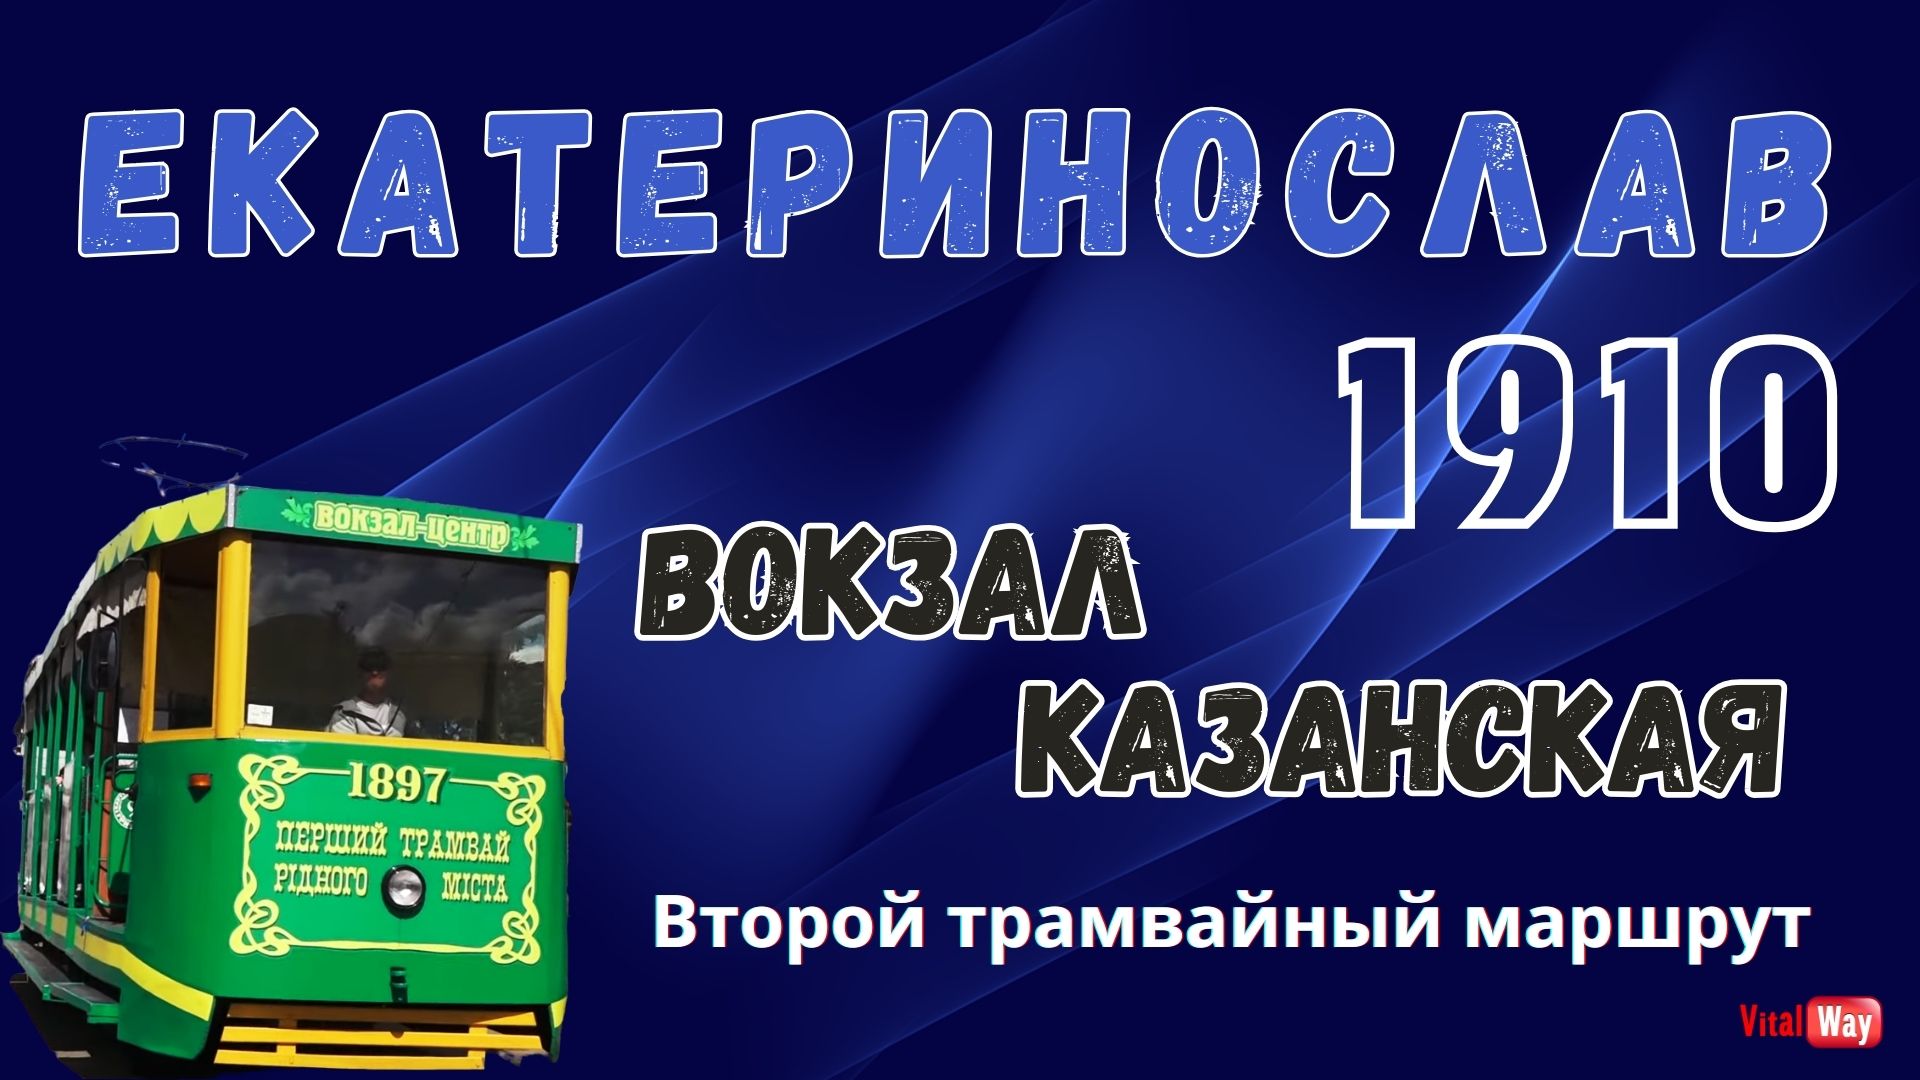 Екатеринослав 1910 год. Второй трамвайный маршрут: Вокзал - Казанская. 